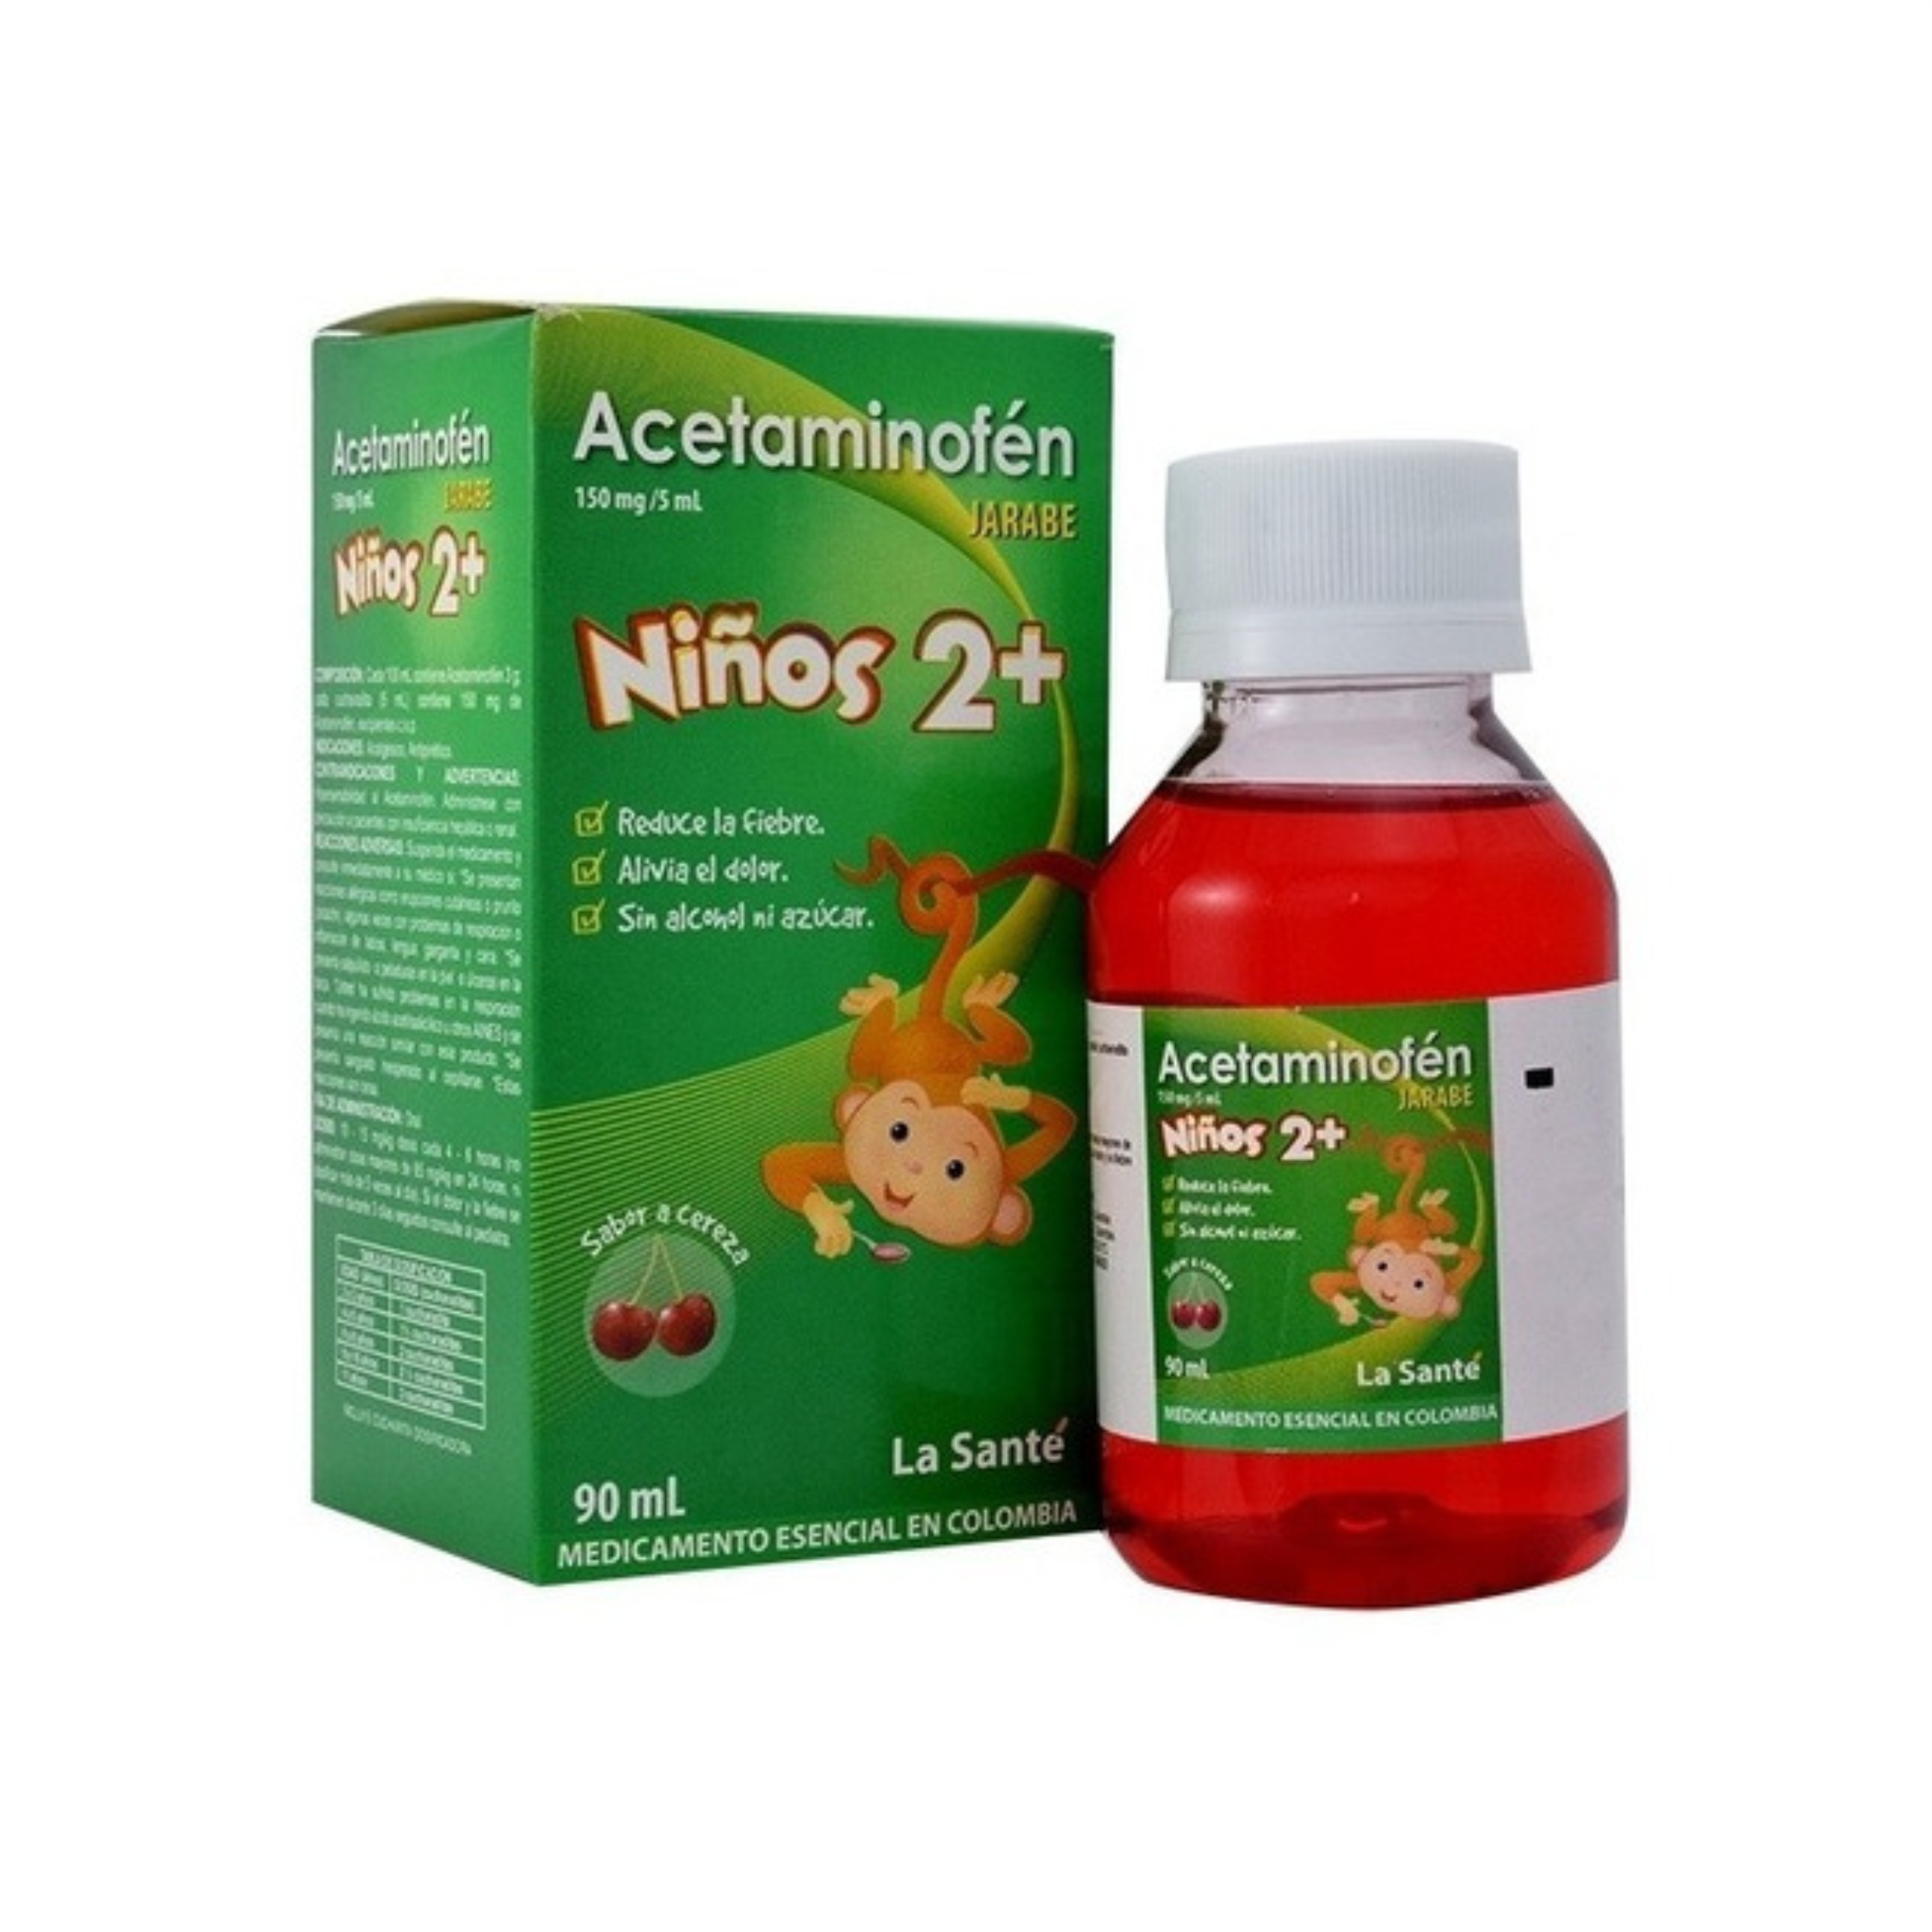 Acetaminofén Jarabe 150mg/5mL (Niños 2+)  90 mL